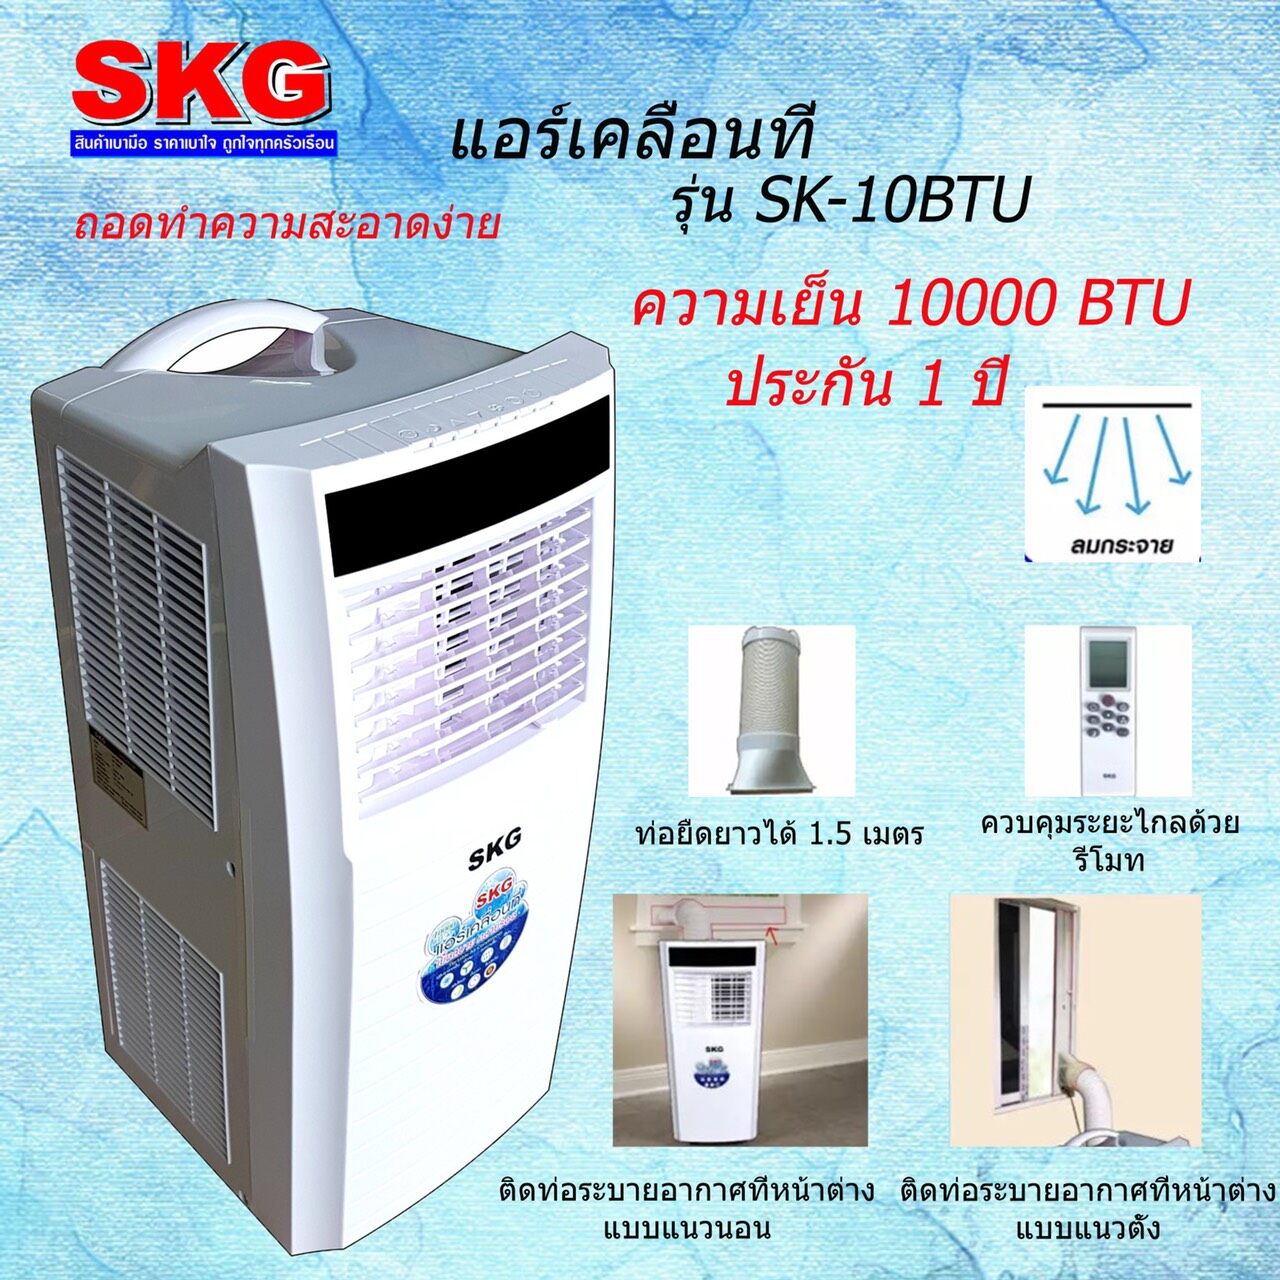 ส่งฟรีเคอรี่!! SKG แอร์เคลื่อนที่ 10000BTU รุ่น SK-10BTU (สีขาว) เย็นไวคล้ายร้อน ของแท้รับประกัน 1 ปี ศูนย์ไทย